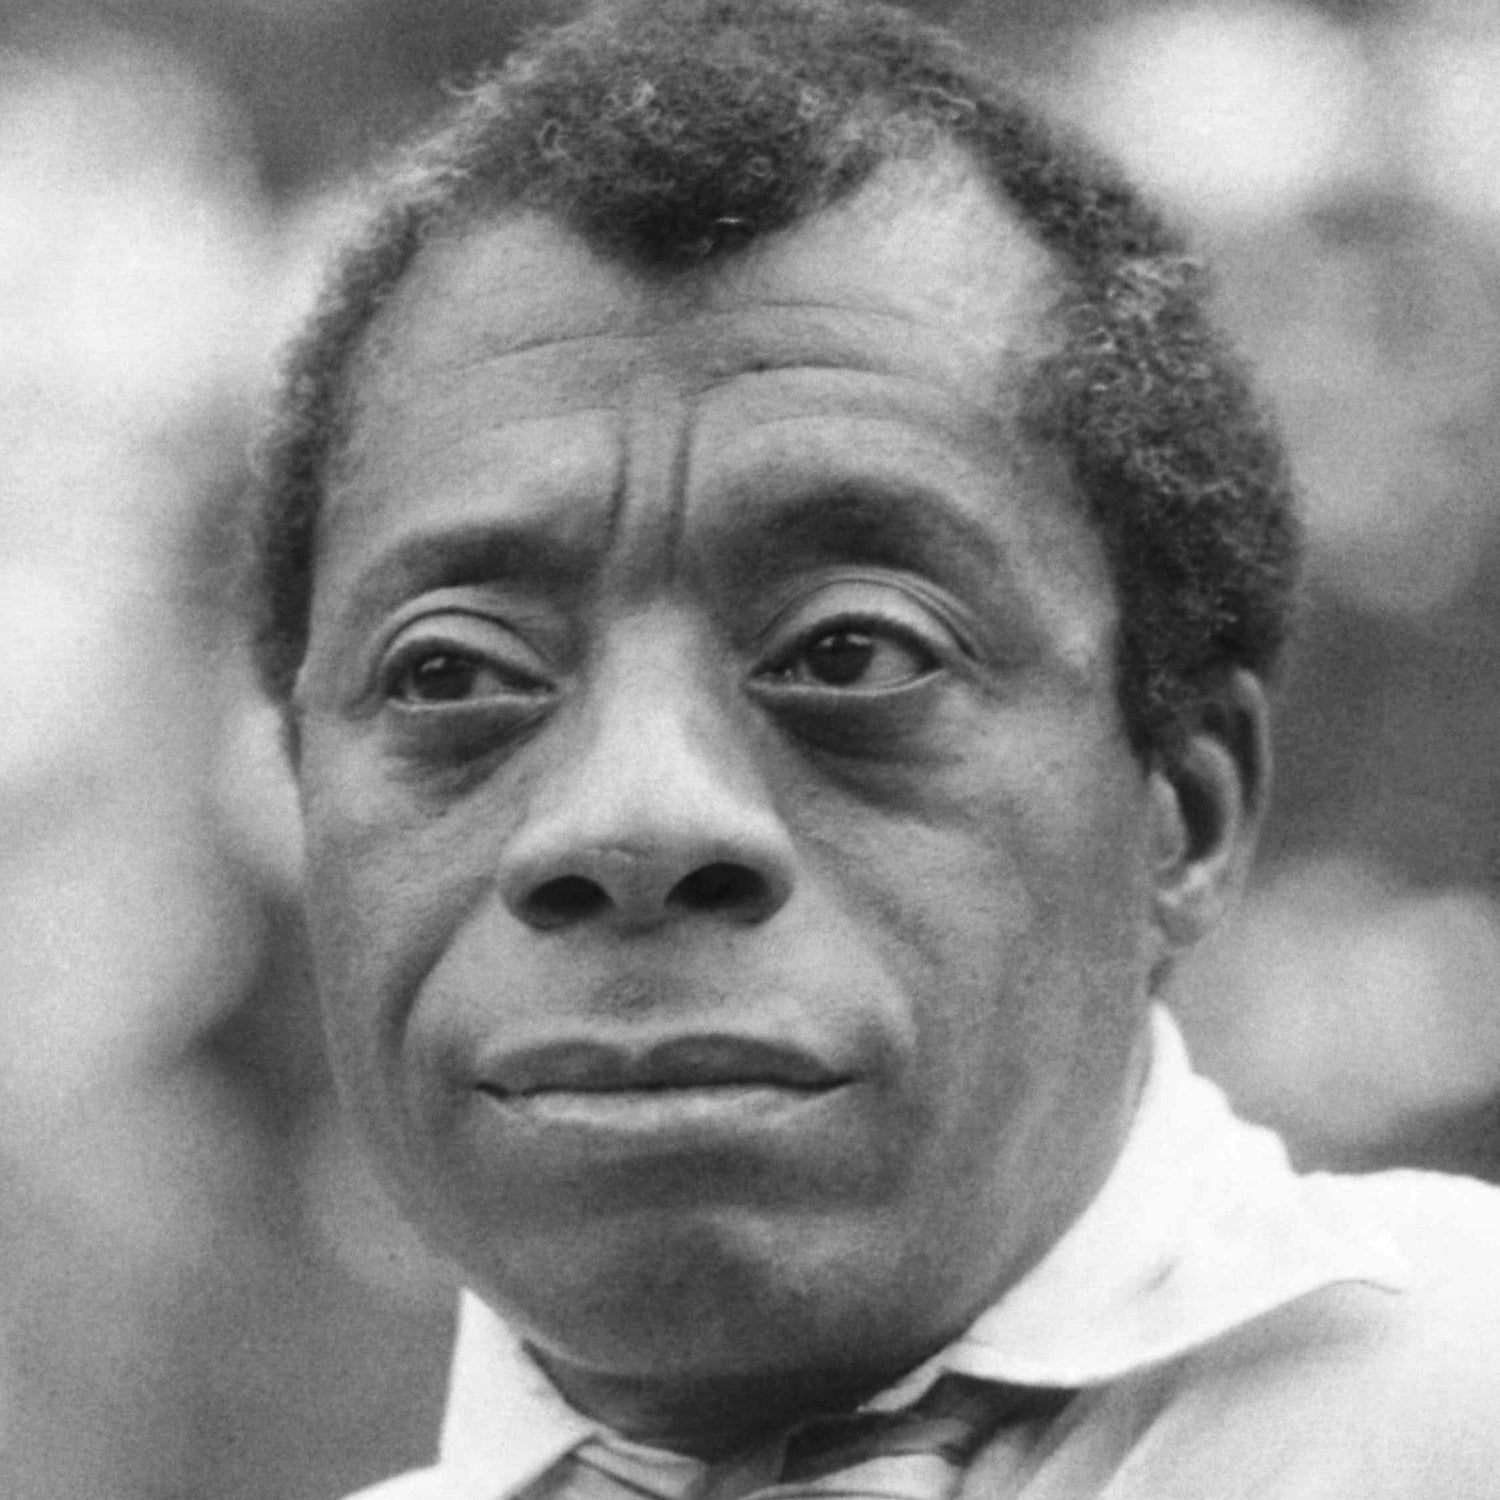 James Baldwin, in 1969